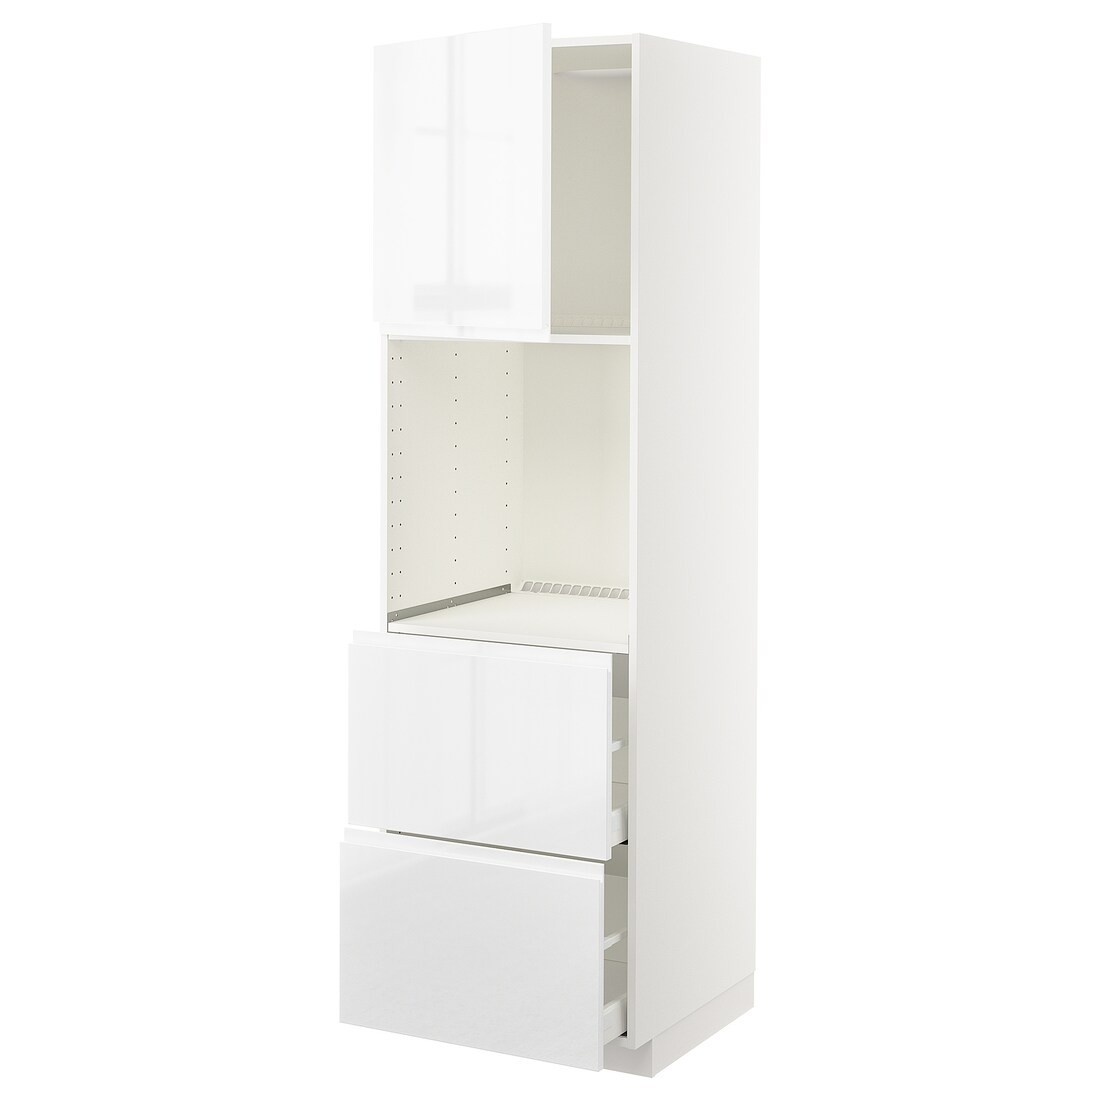 METOD МЕТОД / MAXIMERA МАКСИМЕРА Высокий шкаф для духовки с дверцей / ящиками, белый / Voxtorp глянцевый / белый, 60x60x200 см